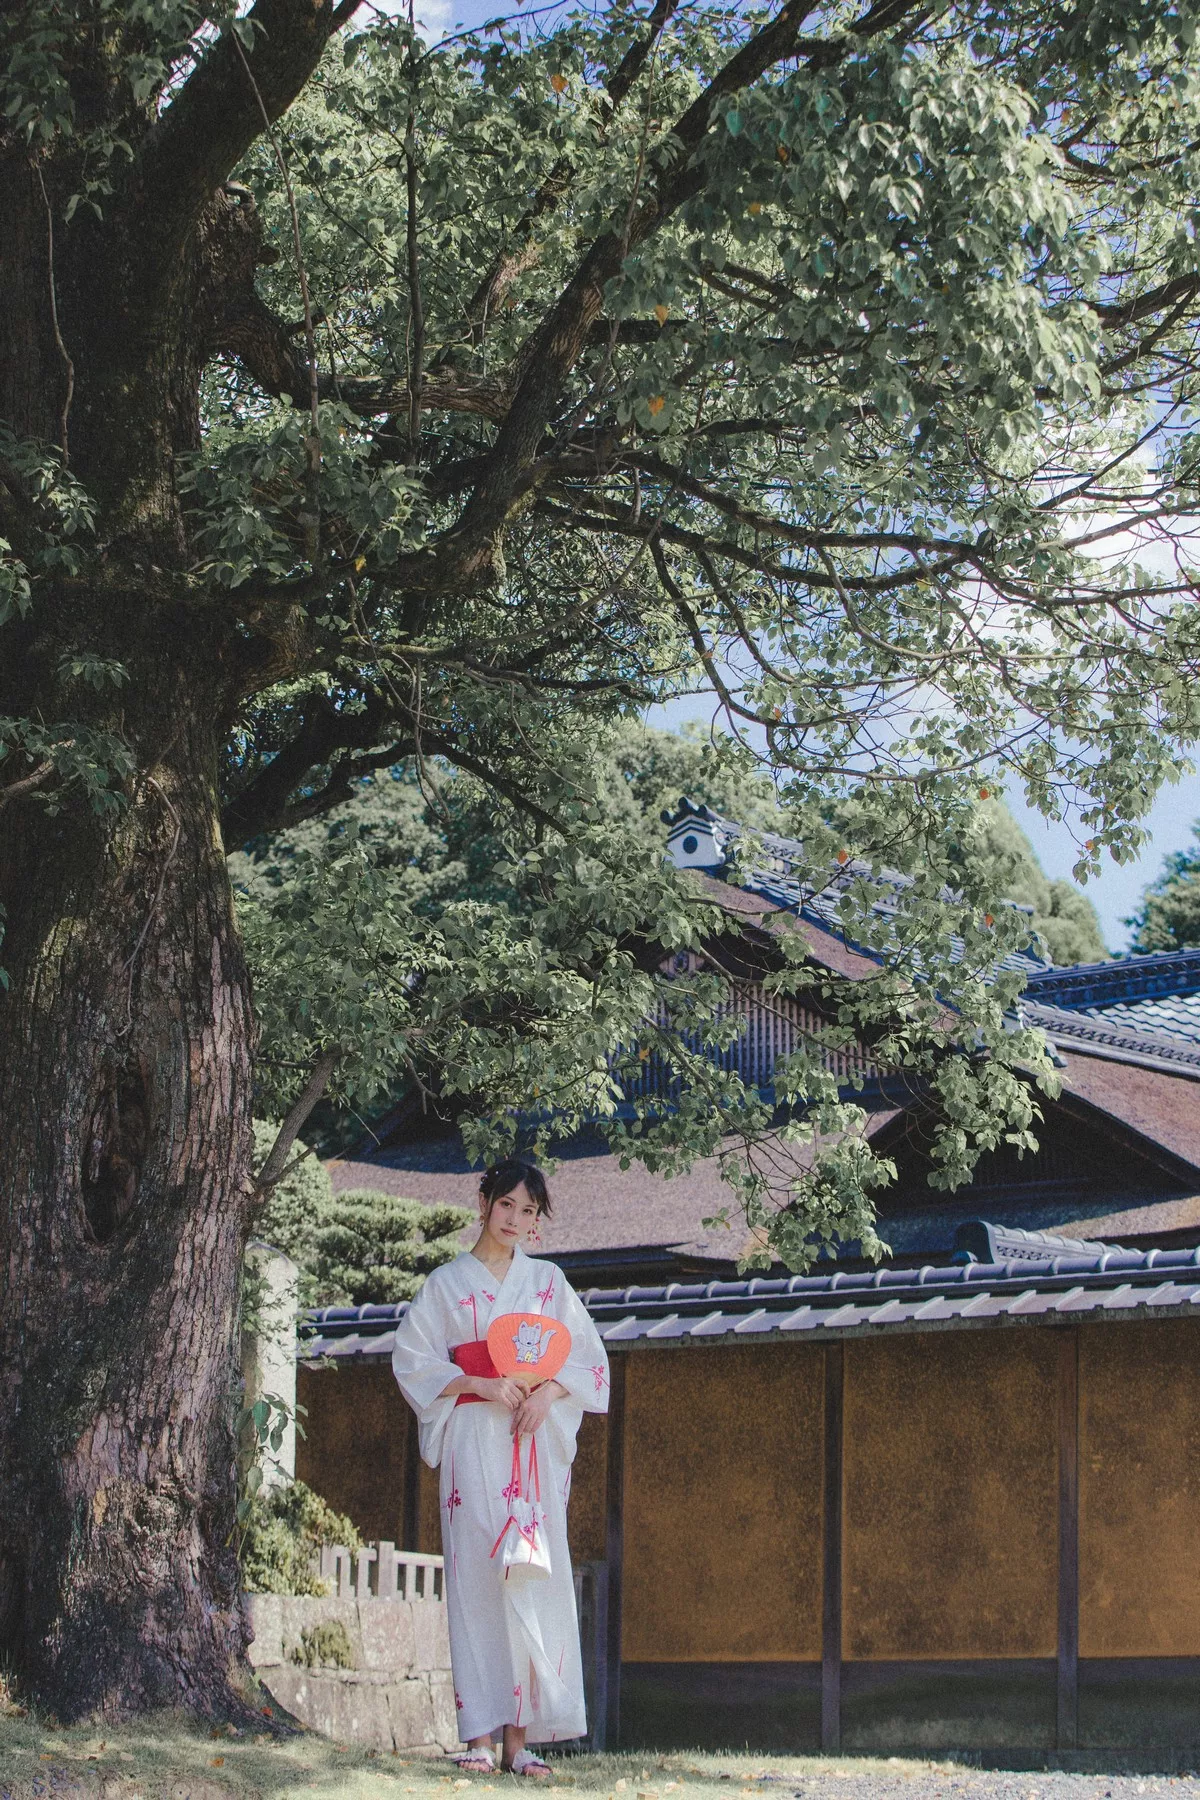 Xgyw.Org_次元少女念雪ww六月间事主题日本旅拍系列户外性感JK制服+和服迷人诱惑写真100P